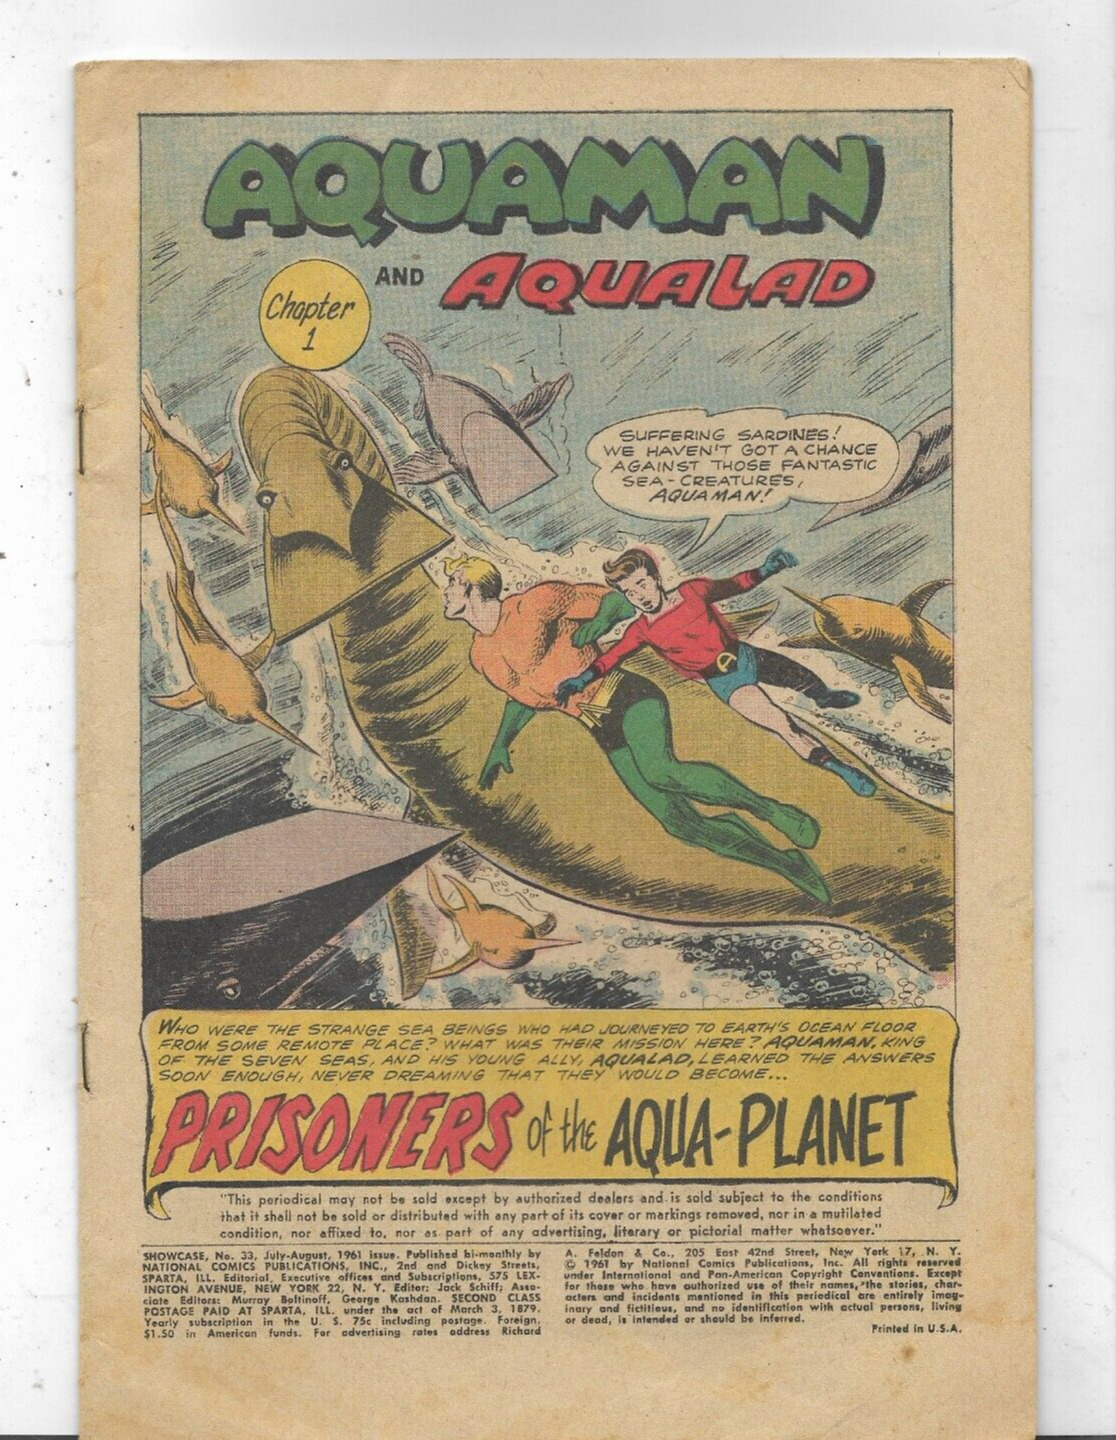 Aquaman Aqualad Prisoners of the Aqua-Planet No. 33 July-Aug 1961 Cover missing